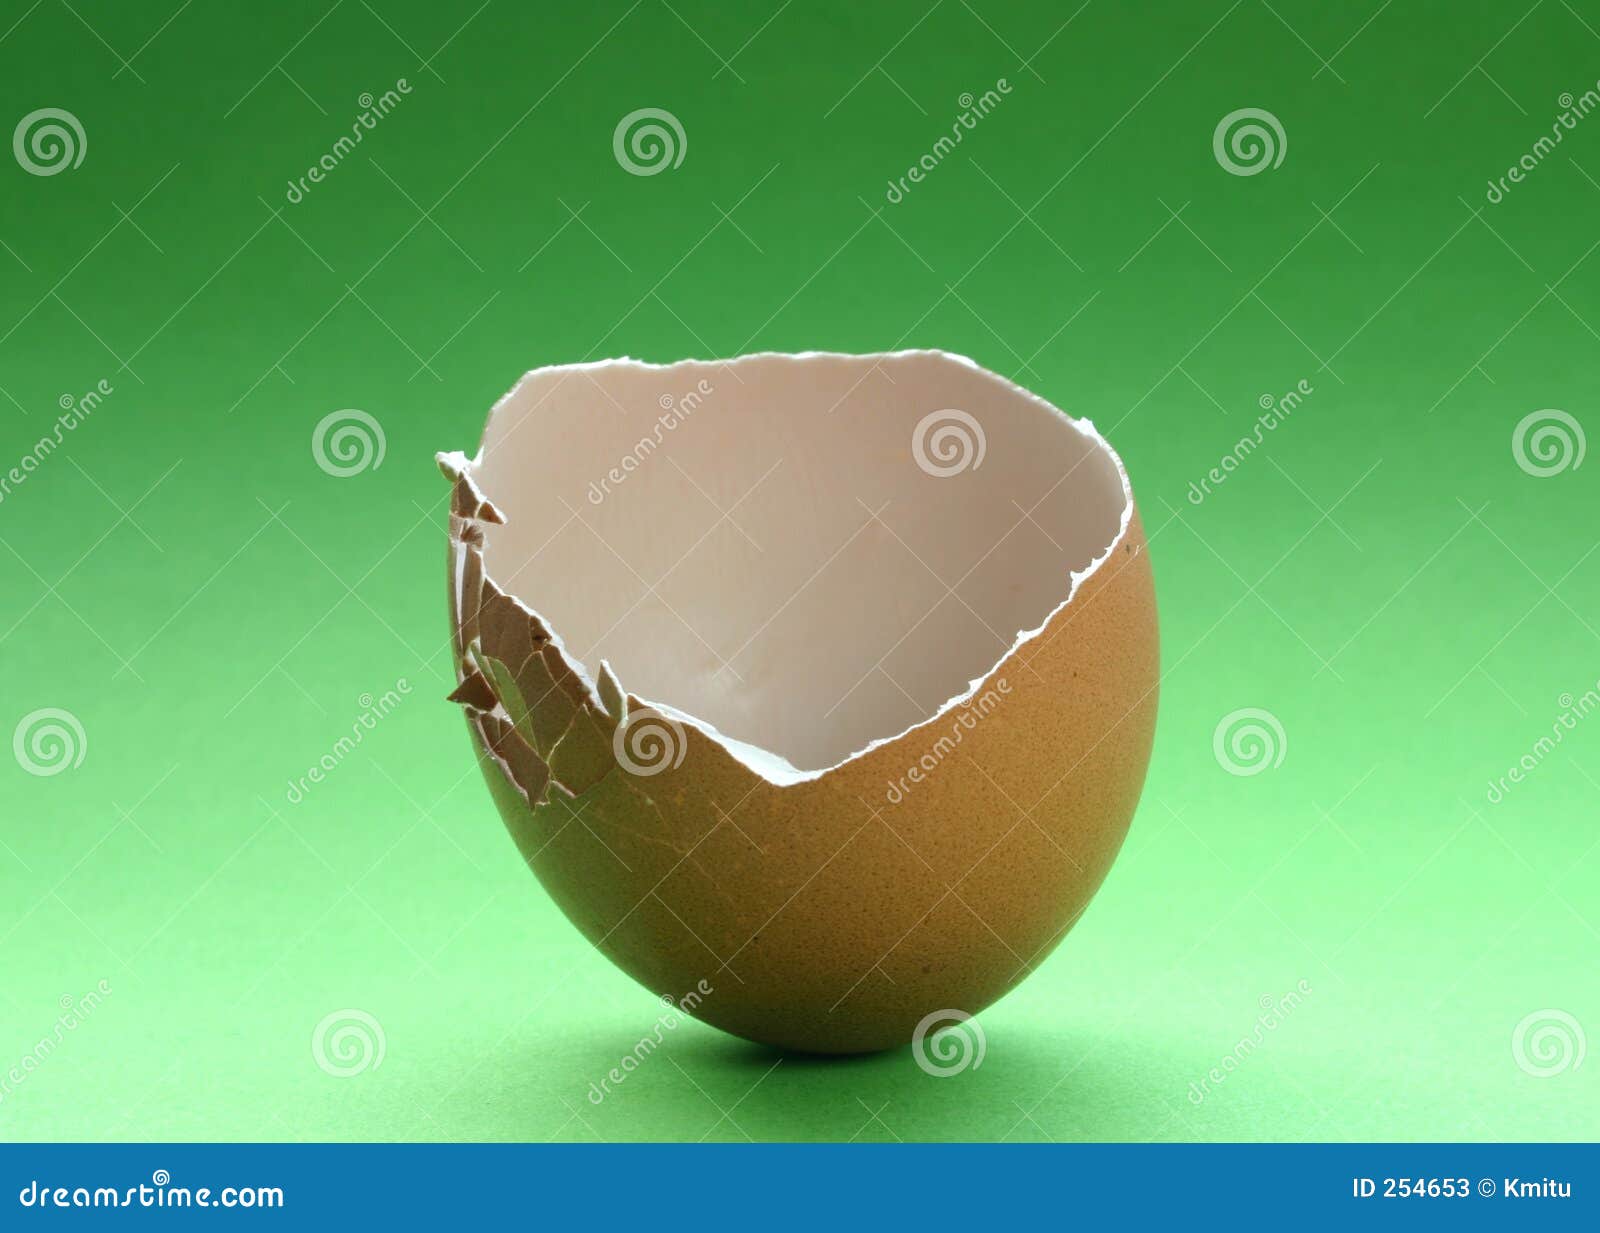 broken eggshell #3